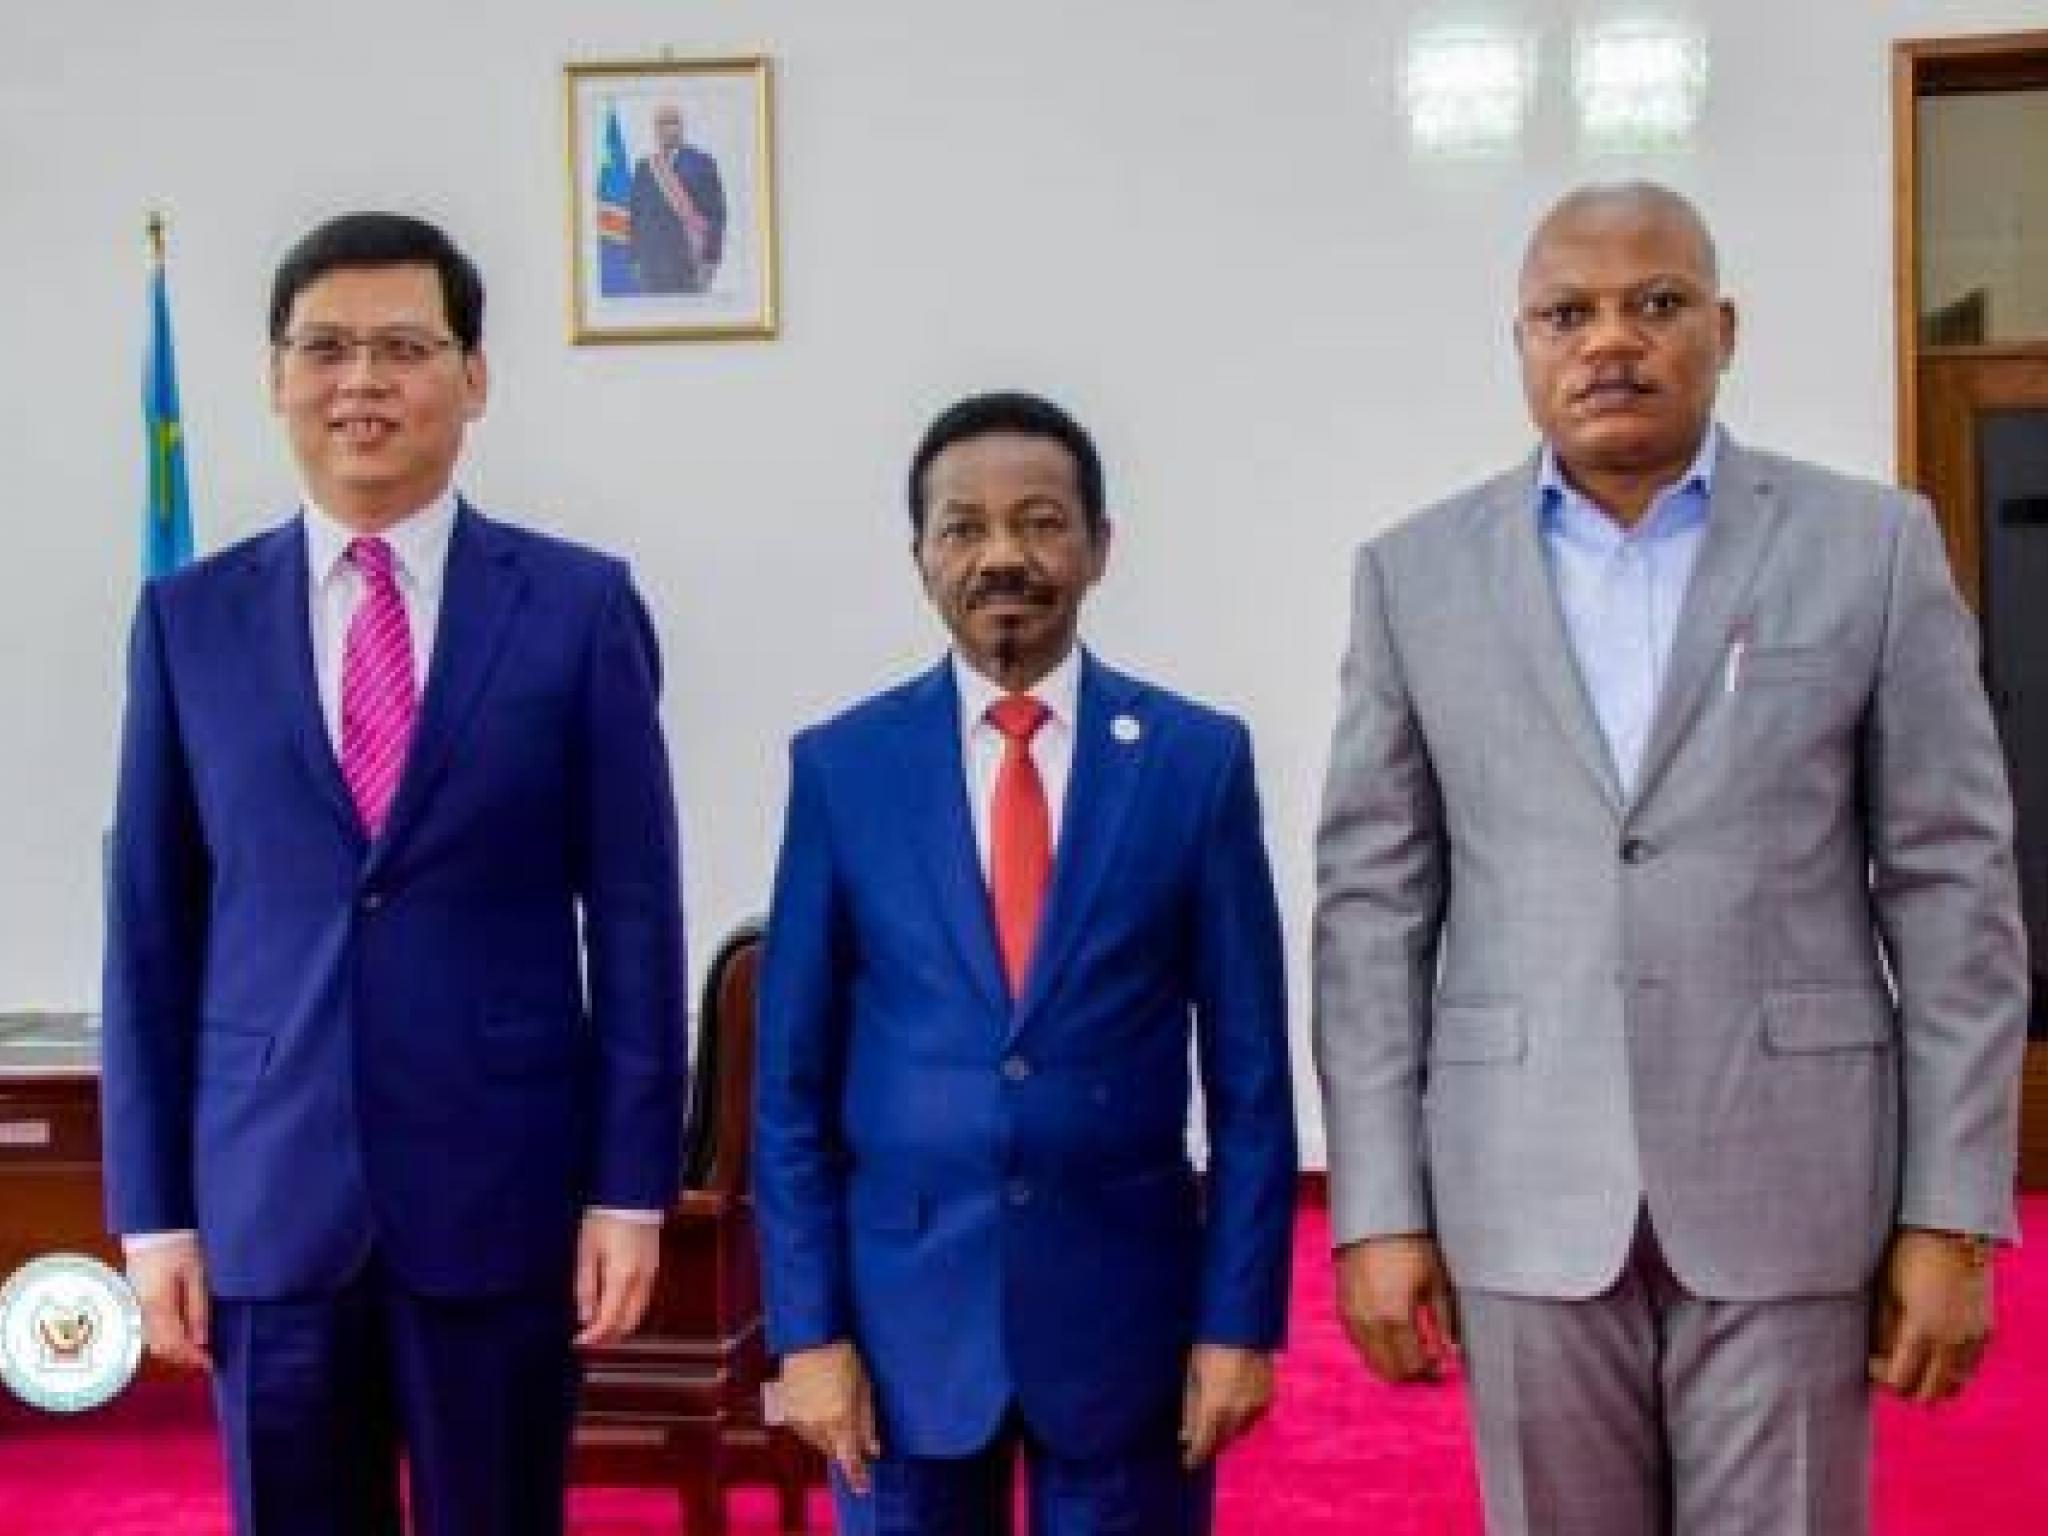 De gauche à droite, l'ambassadeur de la Chine en RDC, le président Mboso placé au milieu, le premier vice-président de l'Assemblée nationale, Jean-Marc Kabund